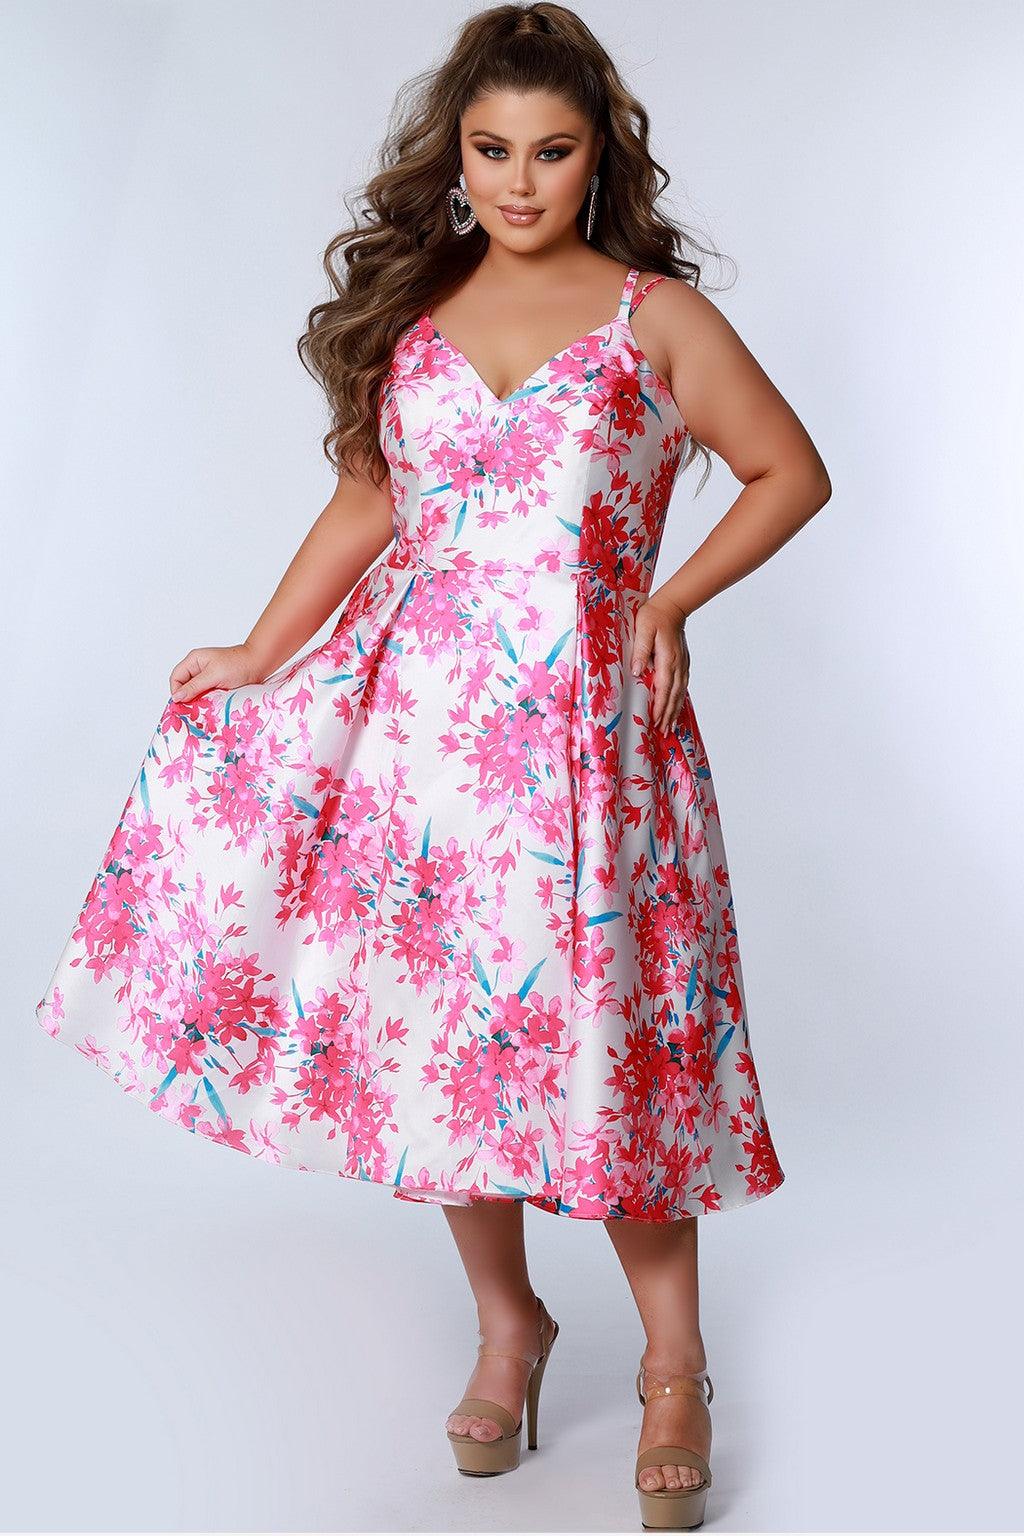 Plus Size Dresses Plus Size Floral Tea Length Dress Pink Blossom